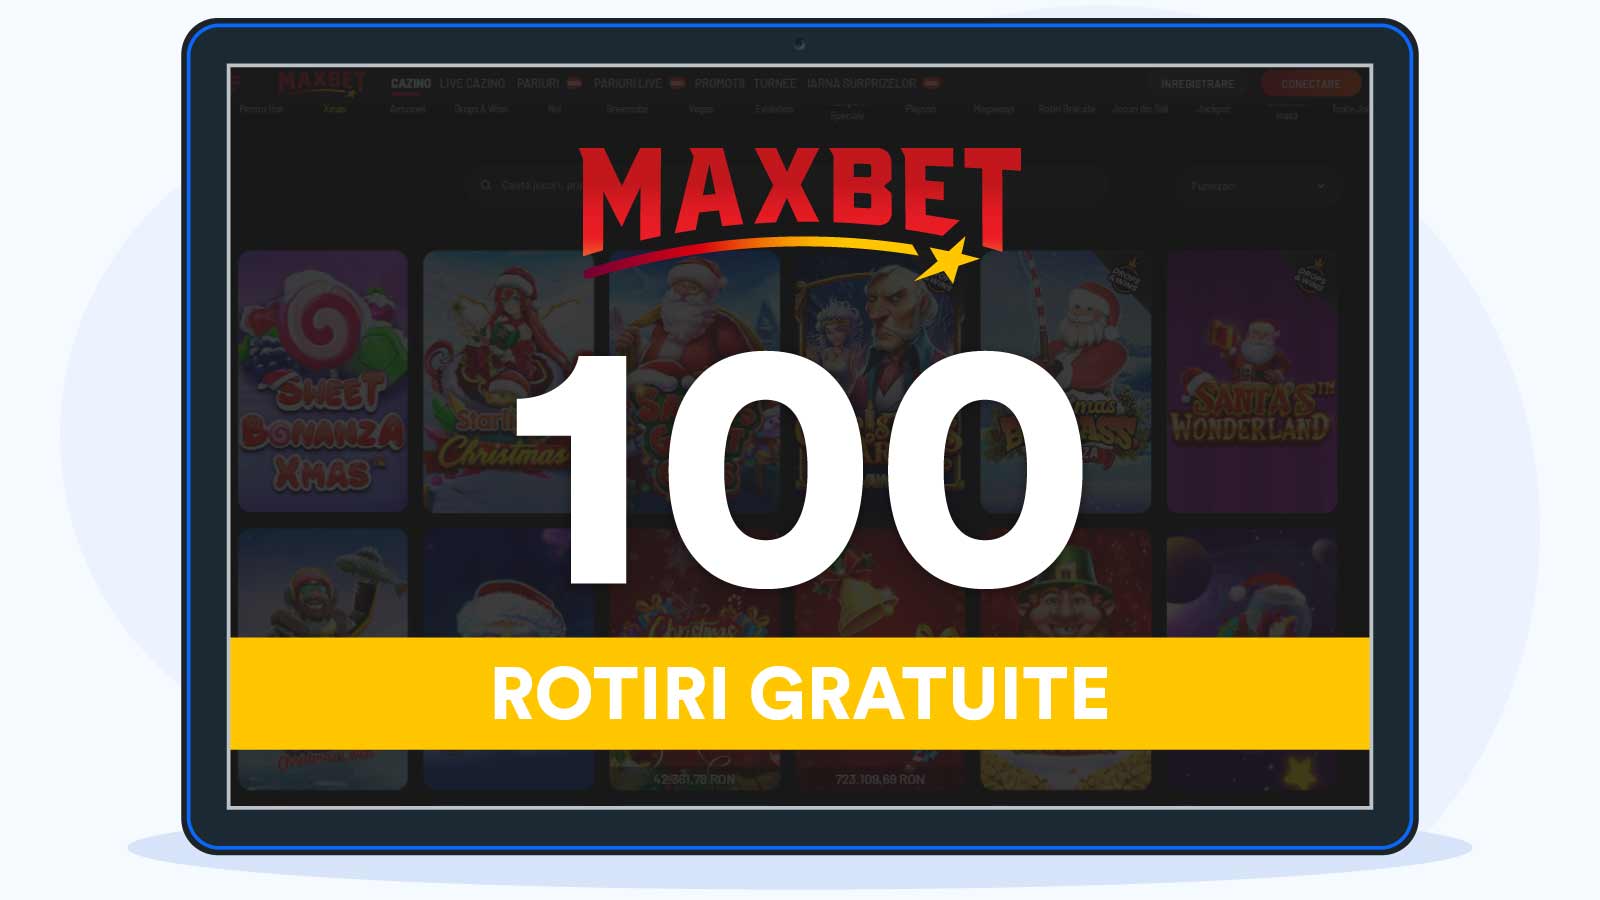 Maxbet - 100 De Rotiri gratuite la verificare